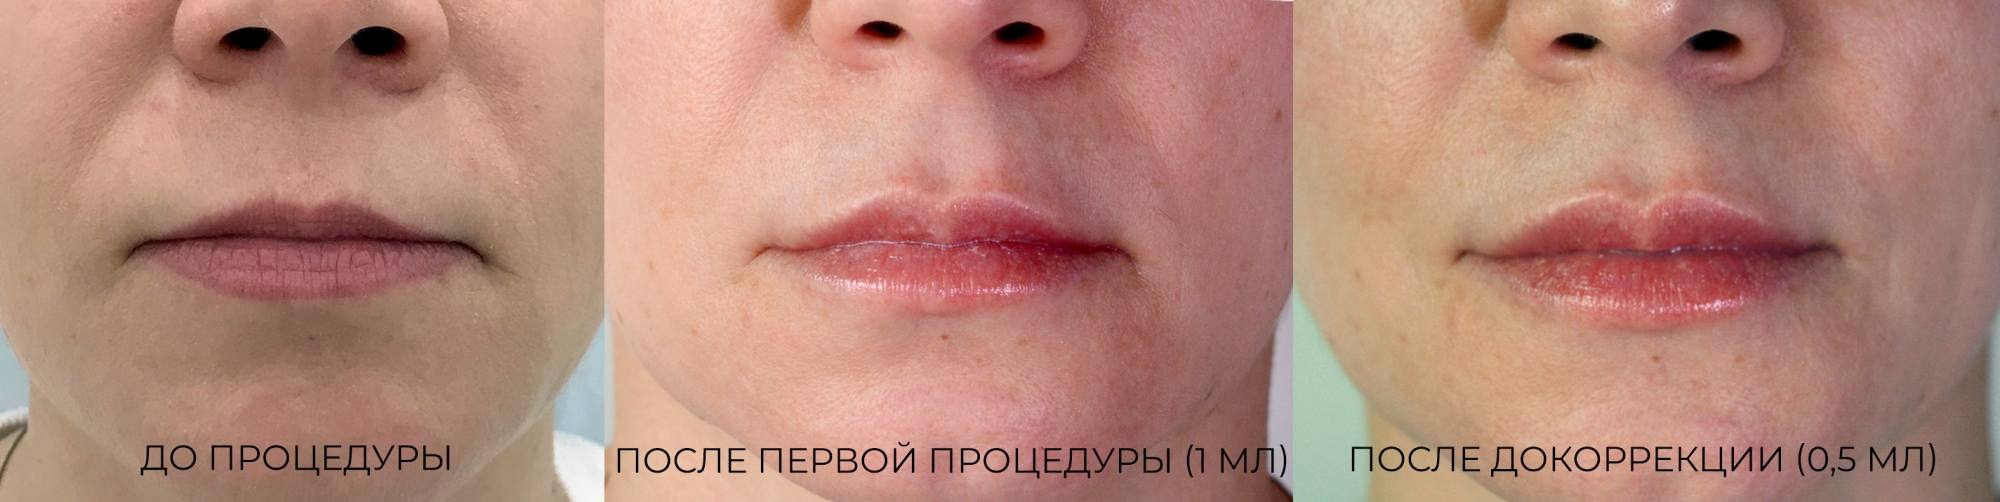 Коррекция формы и увеличение губ